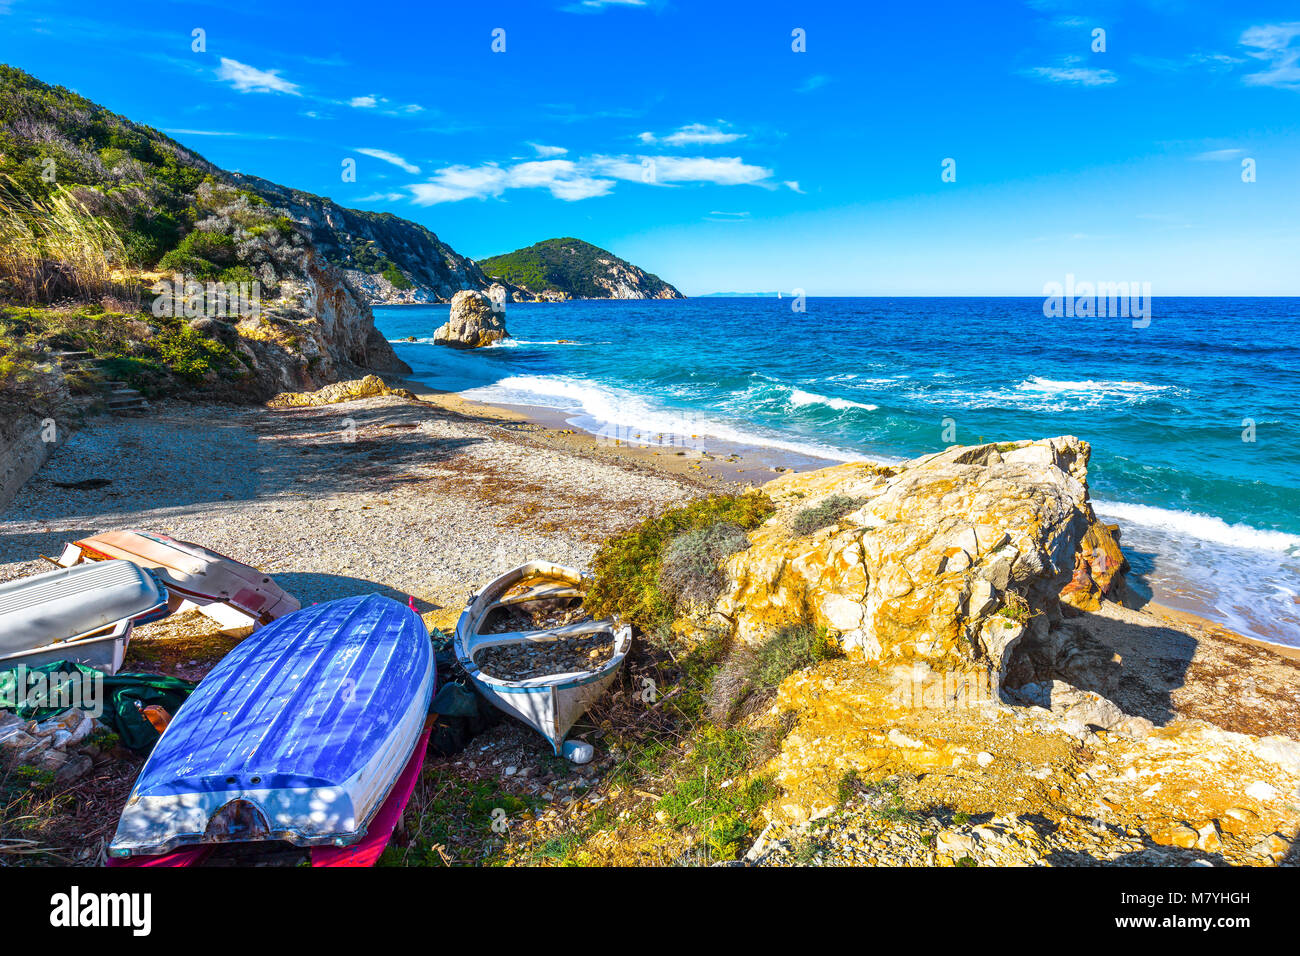 Insel Elba, Portoferraio Sansone la Sorgente Strand Küste und alten Booten. Toskana, Italien, Europa. Lange Belichtung. Stockfoto